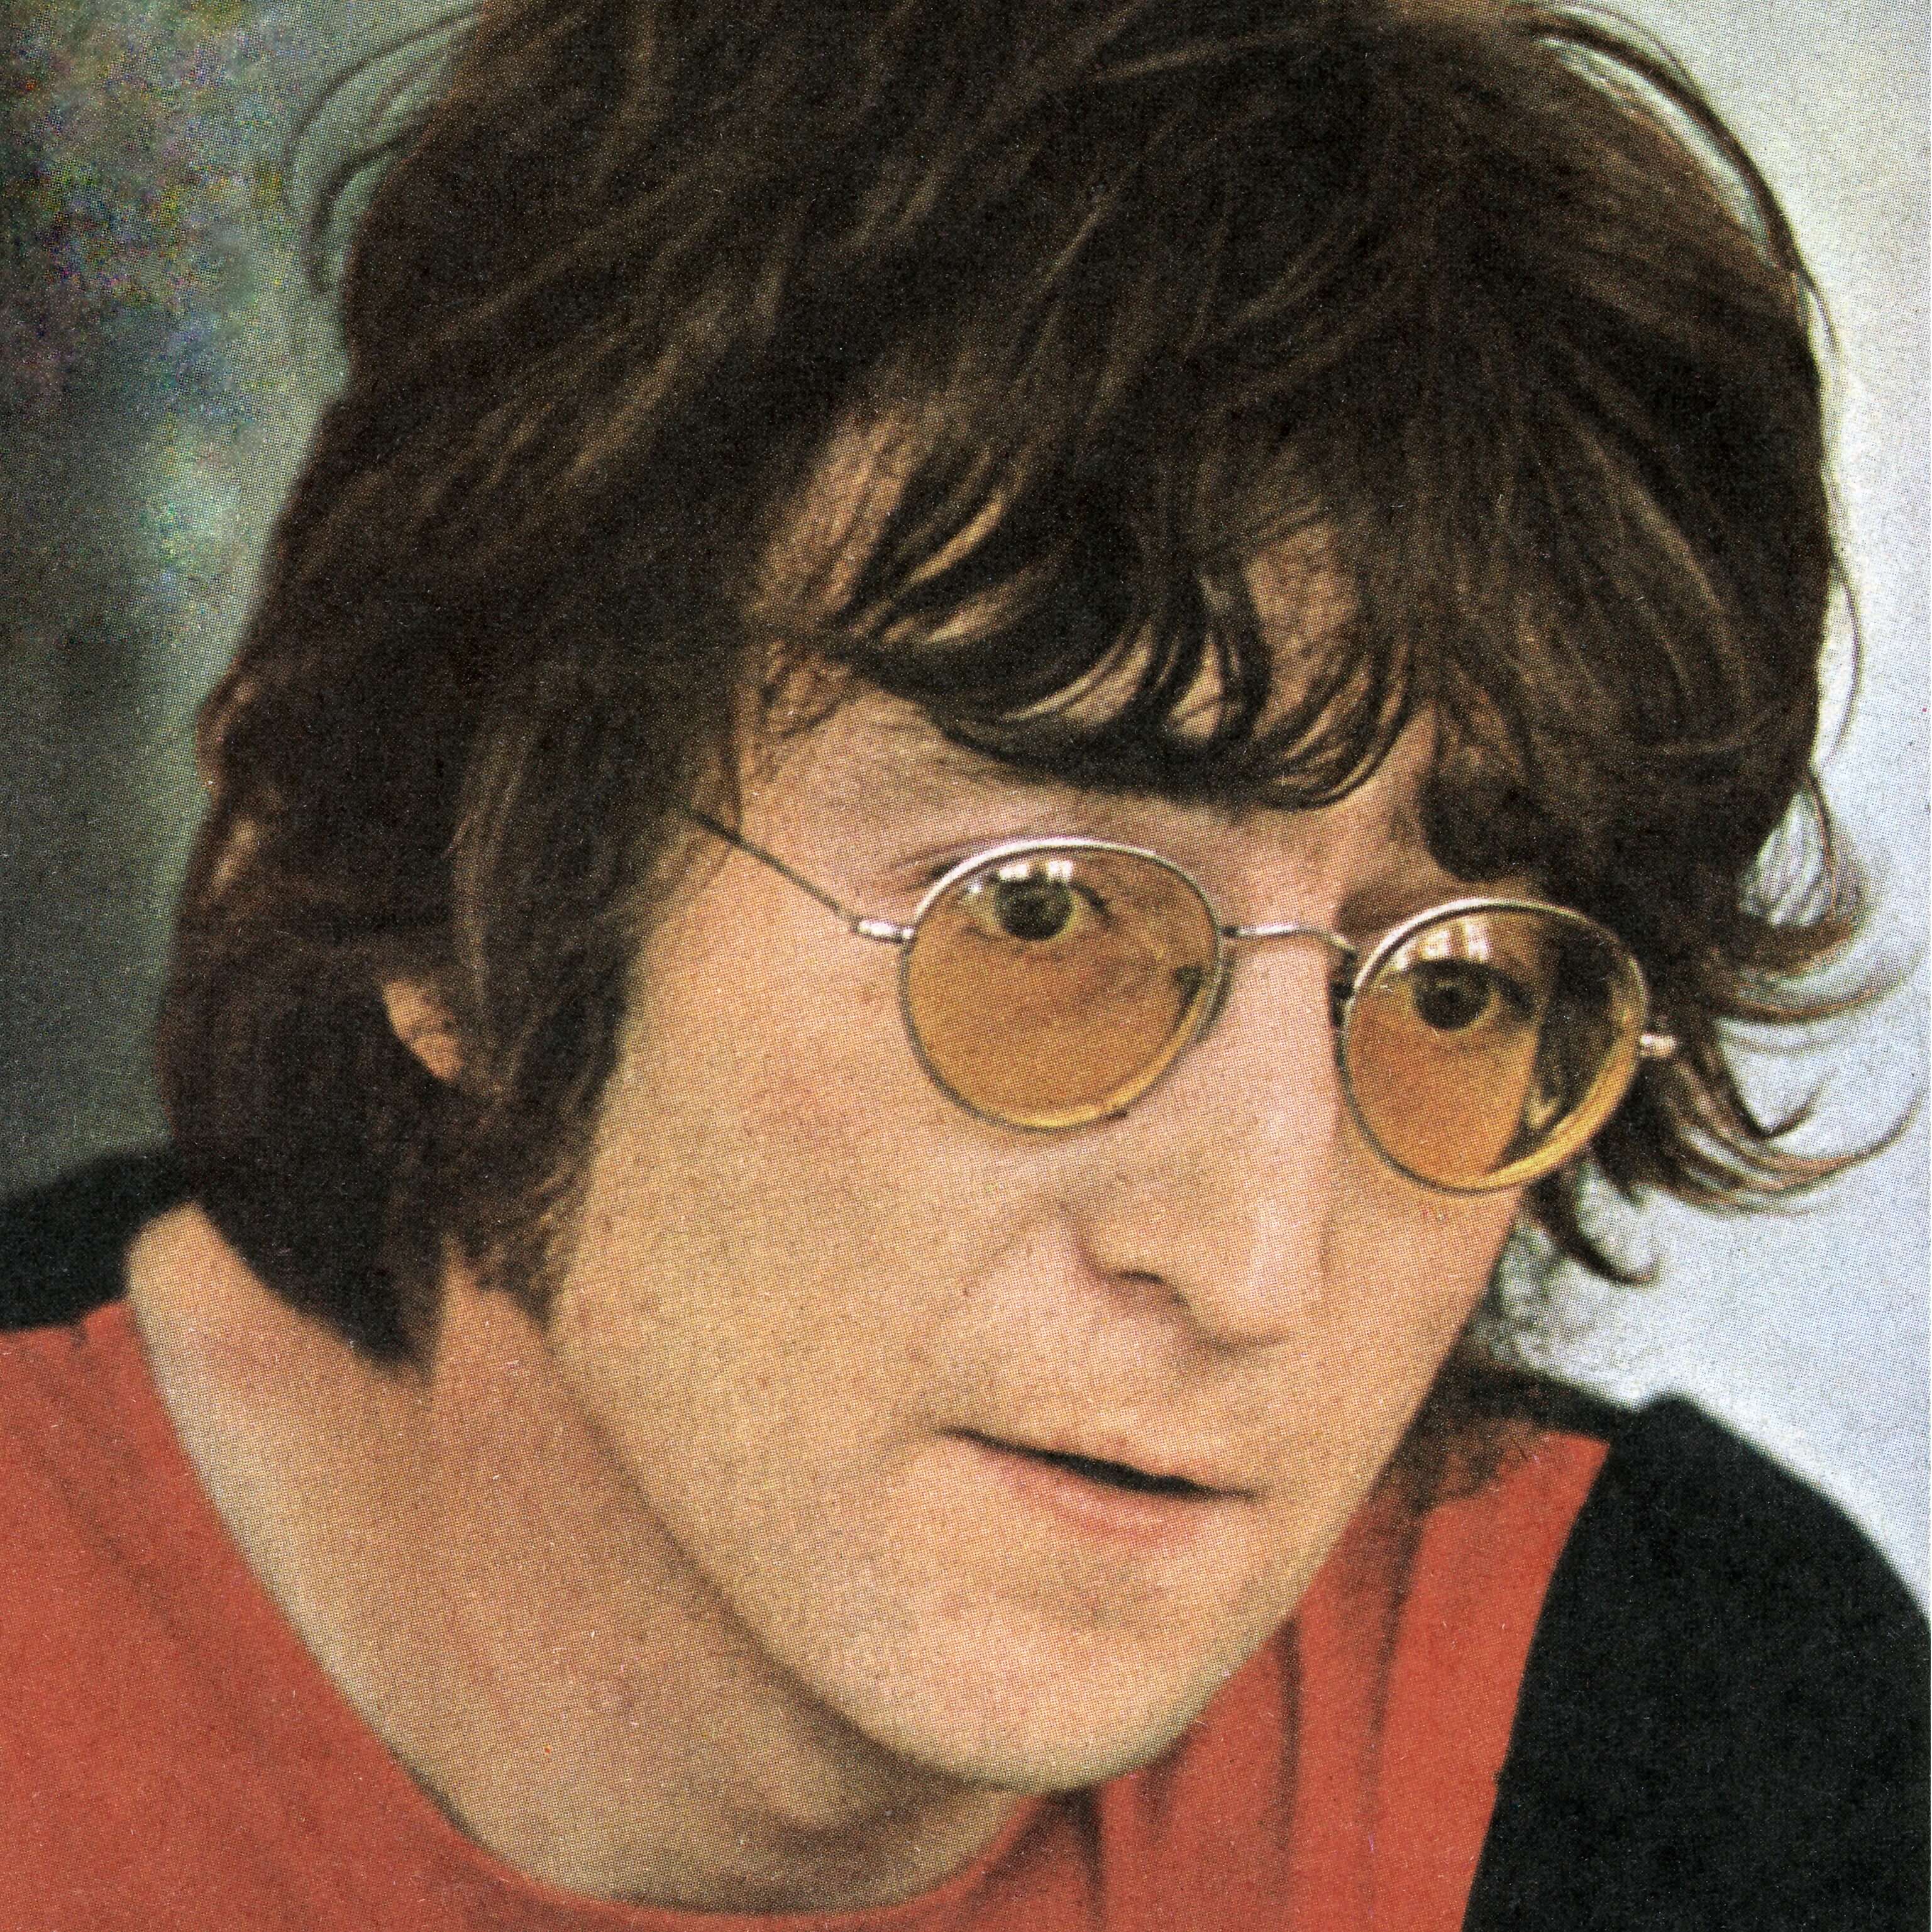 "Imagine" singer John Lennon in a red shirt